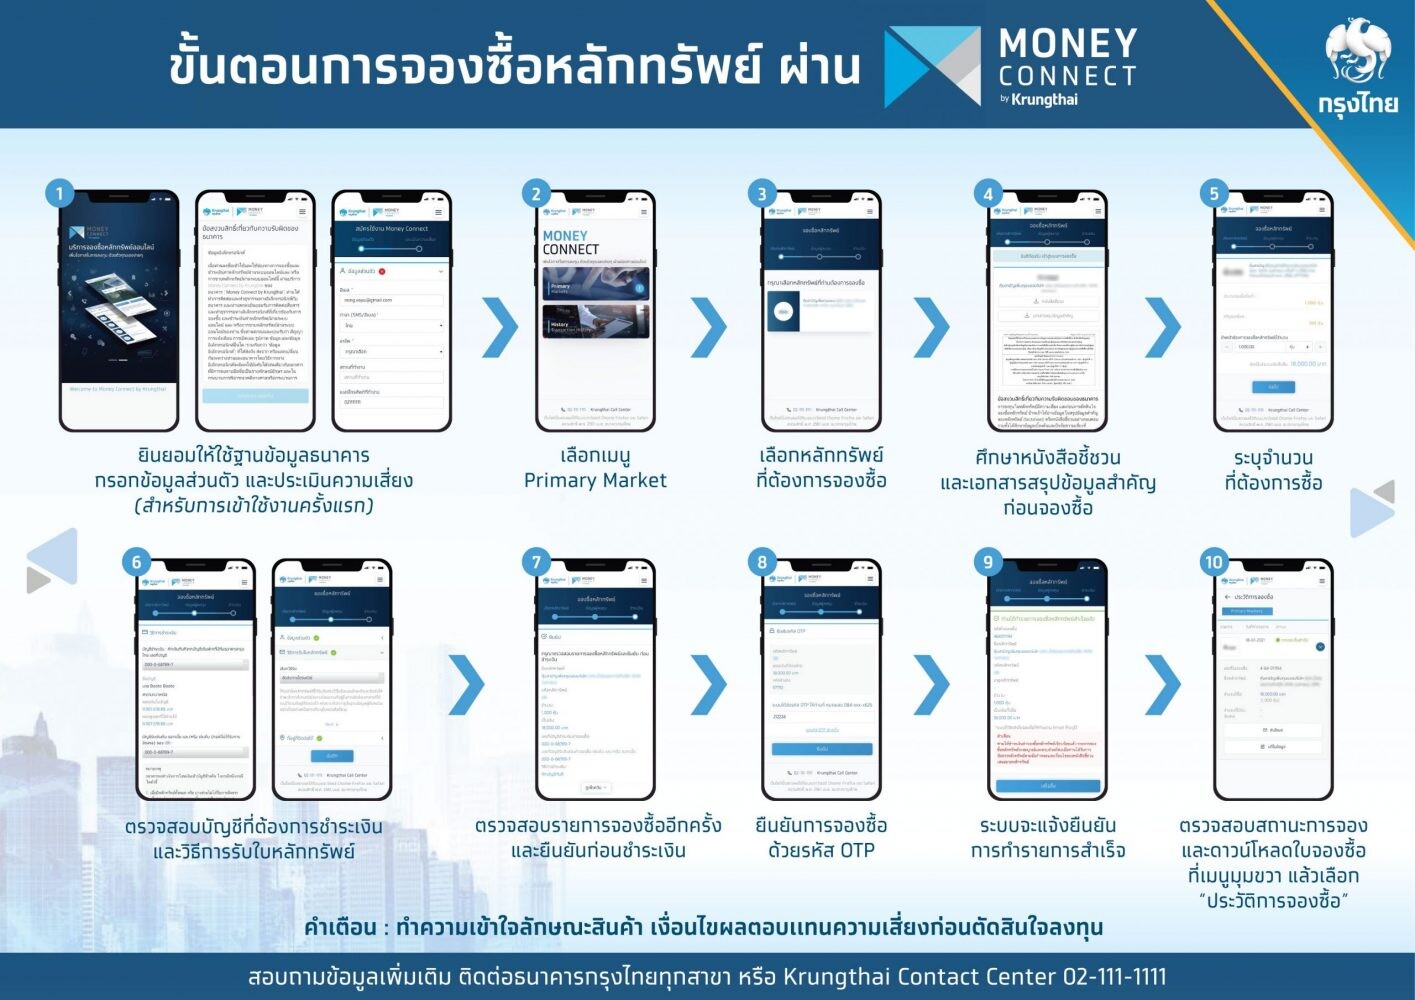 จองหุ้น OR ผ่านกรุงไทย "ง่ายนิดเดียว" ลูกค้าใหม่ไปสาขา ลูกค้าเดิมทำผ่าน Money Connect